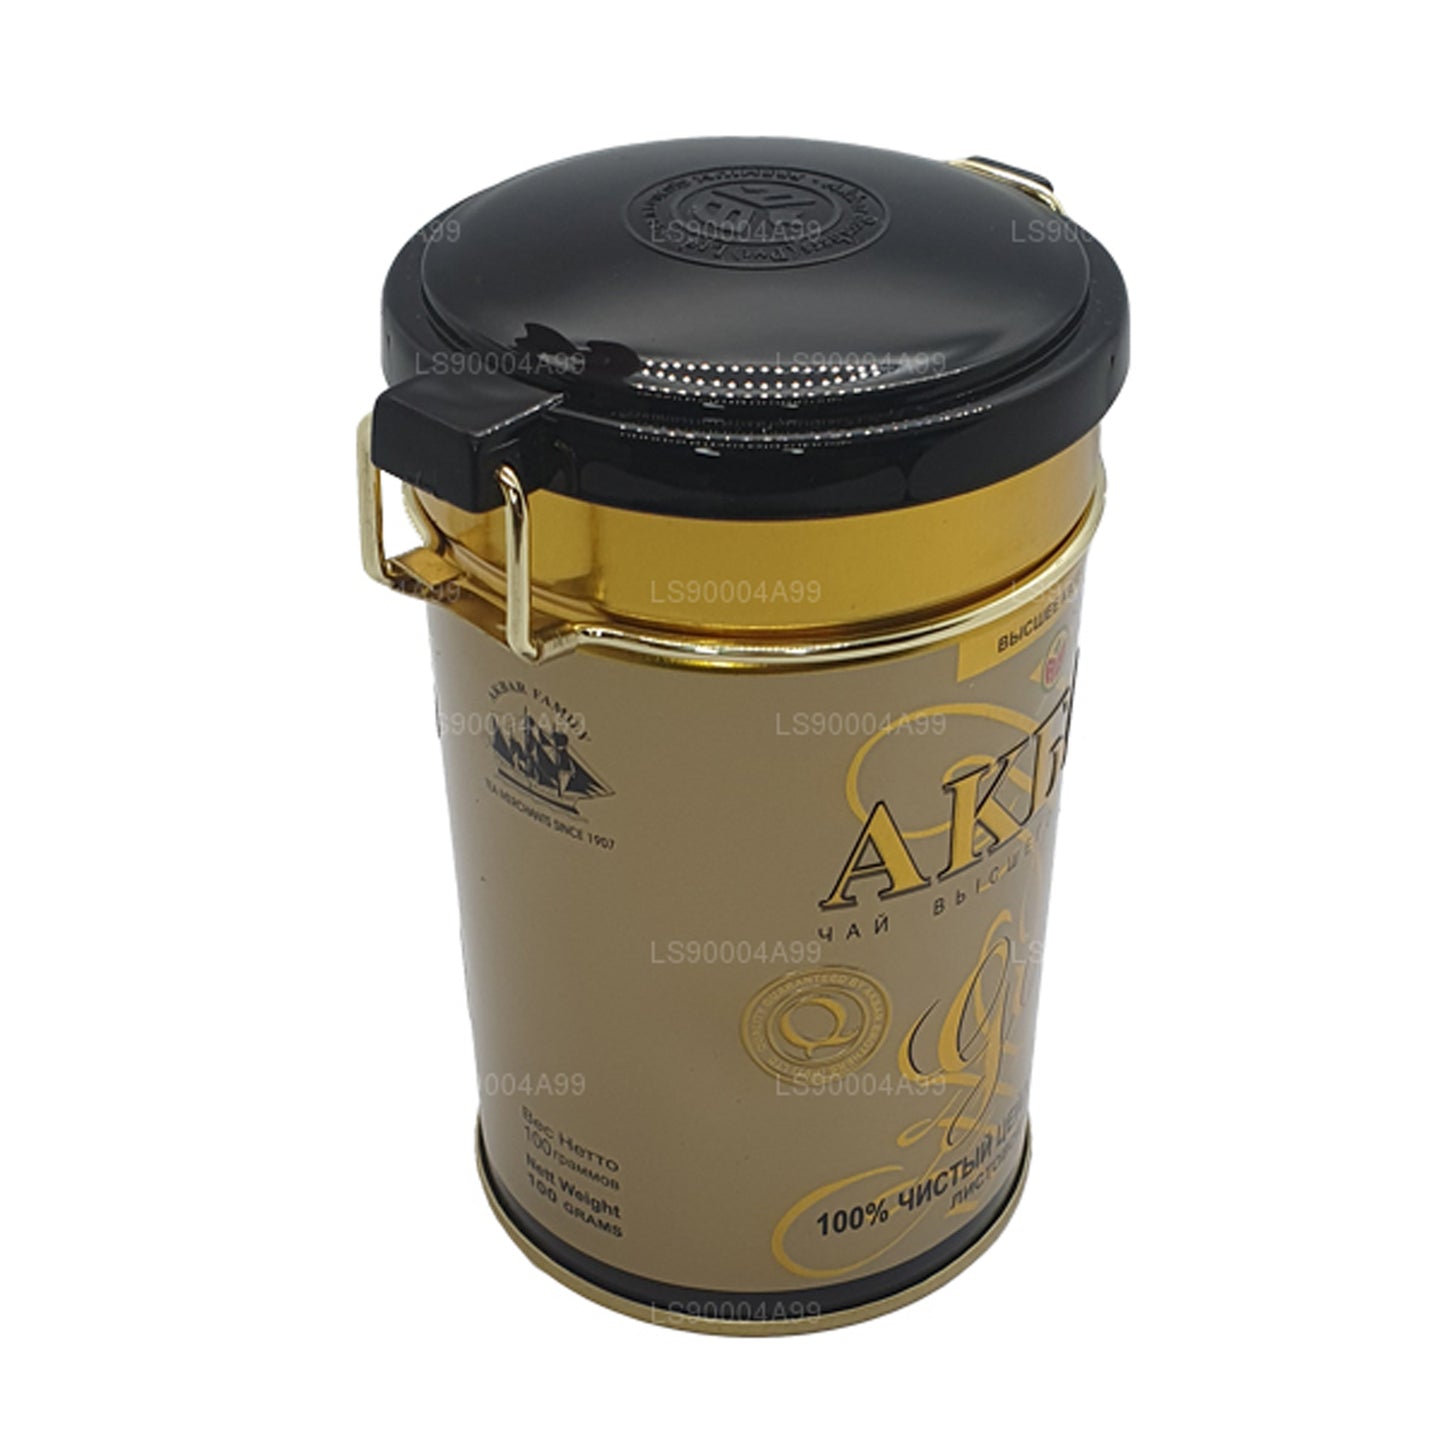 Akbar Gold Leaf Te (100 g)